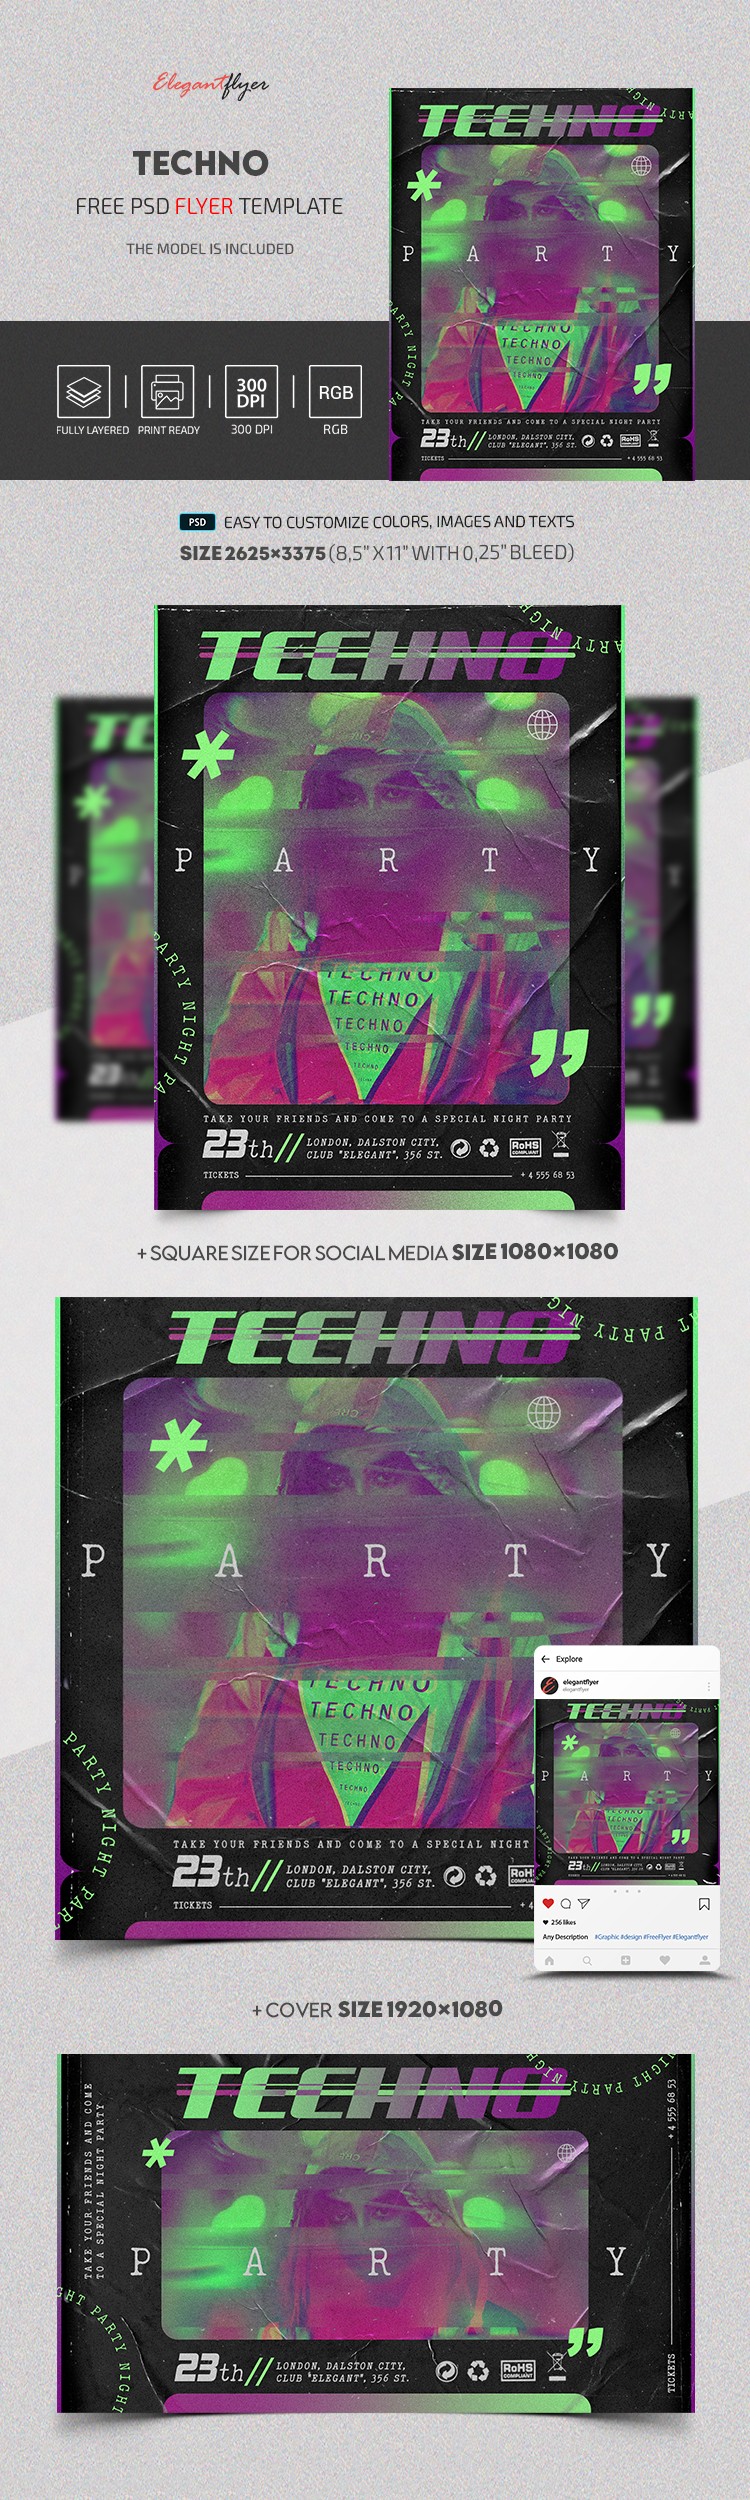 Techno Nacht Party by ElegantFlyer